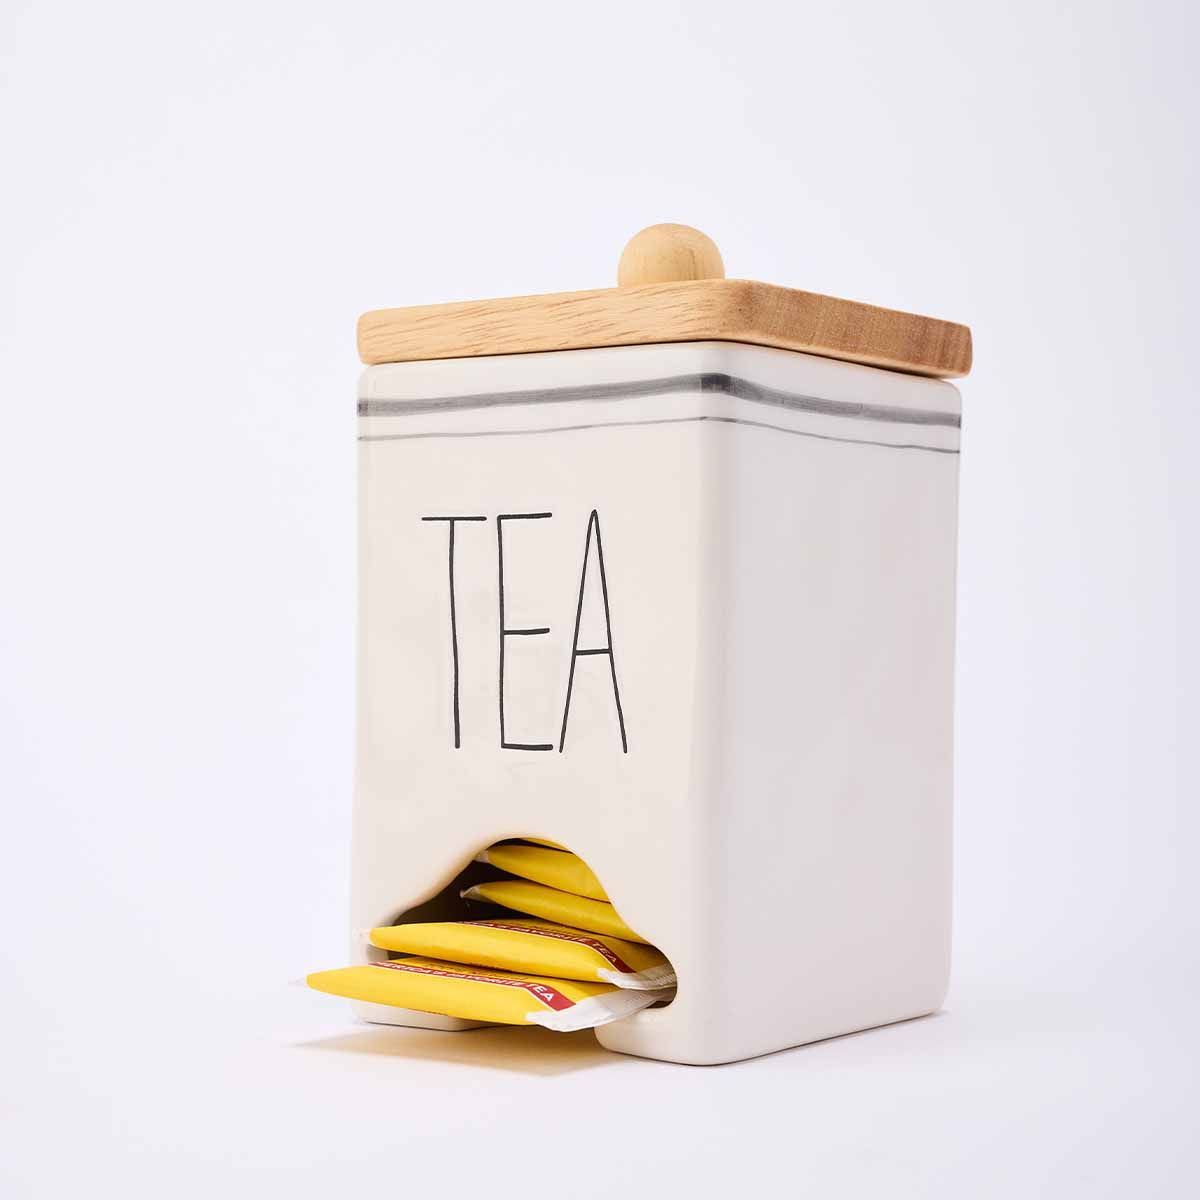 Tea Bag Caddy With Spoon